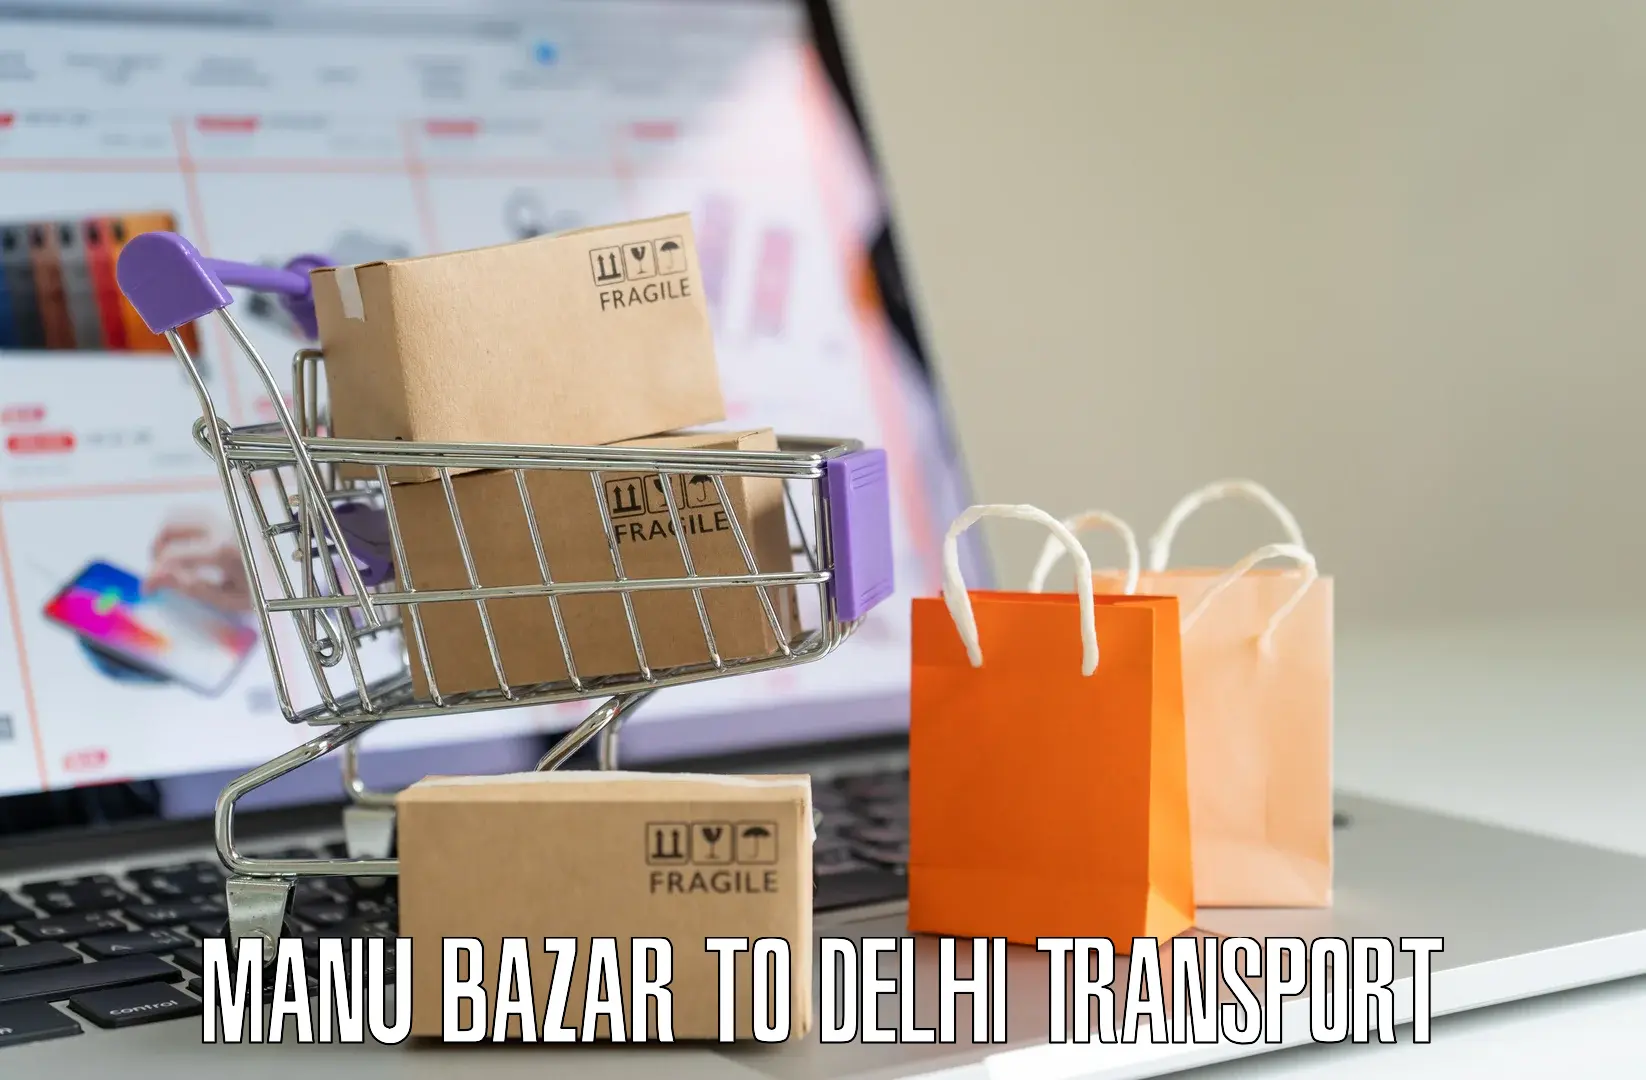 Transport in sharing in Manu Bazar to Sarojini Nagar